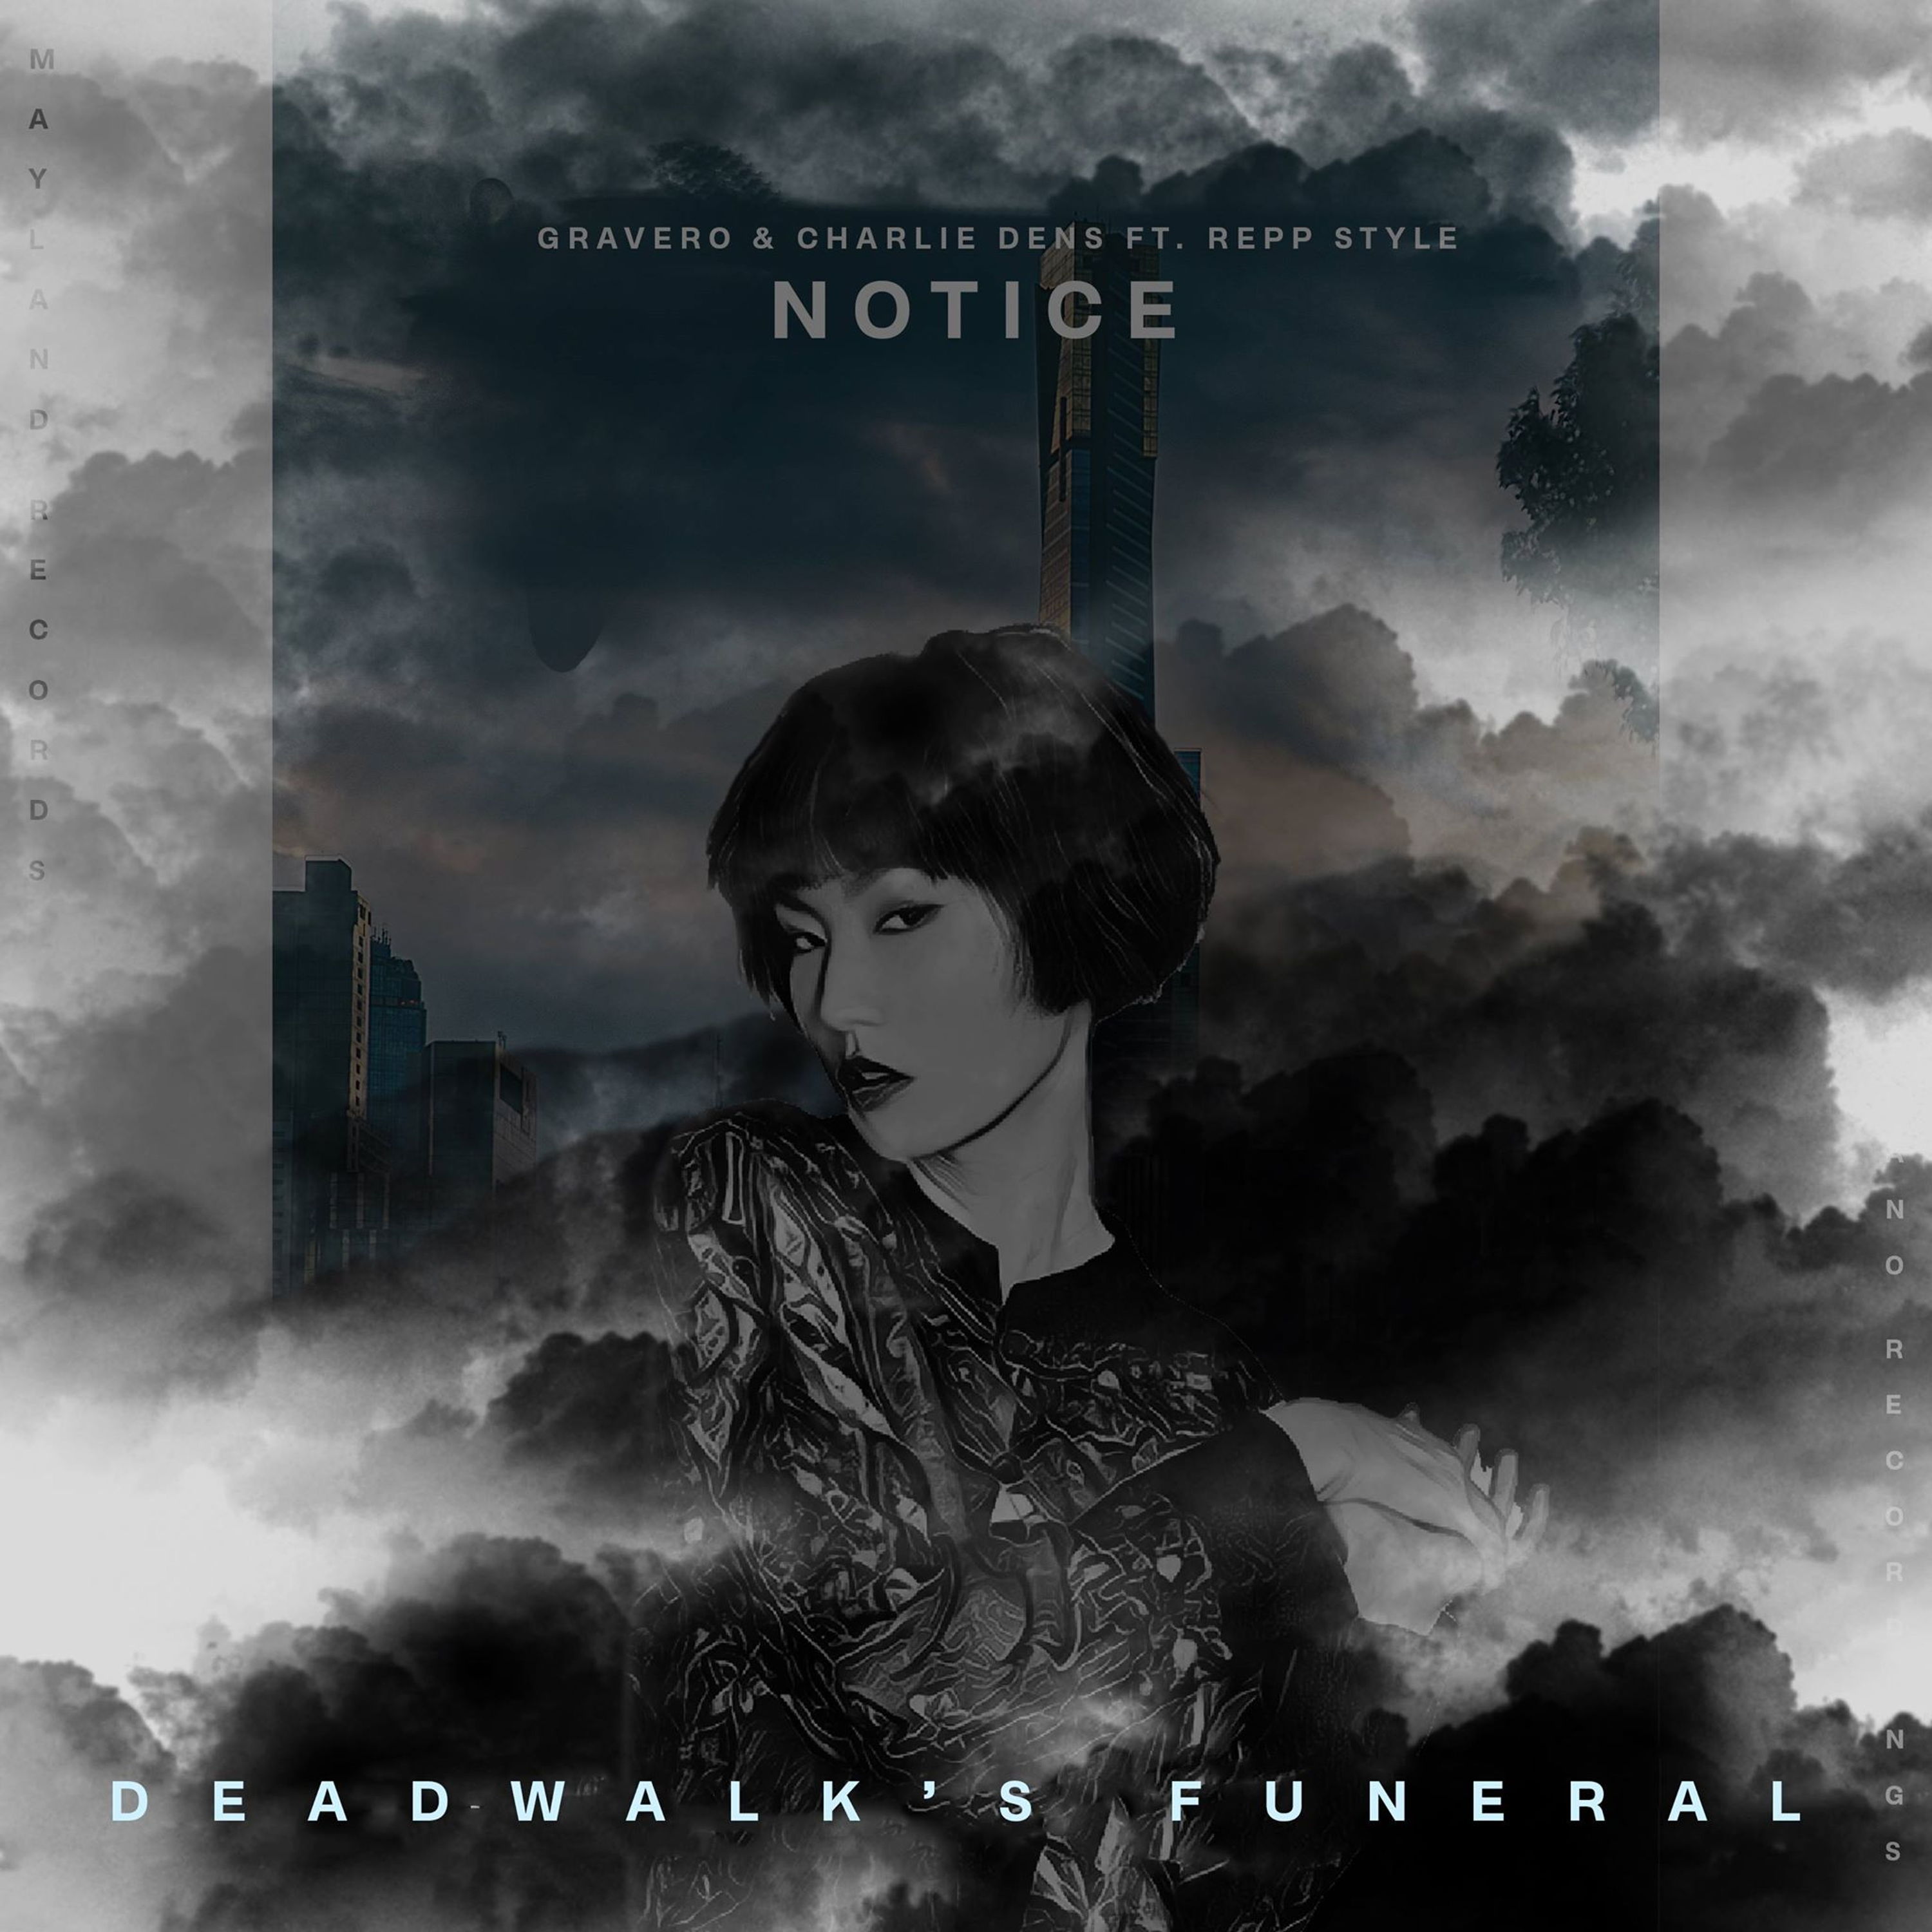 Notice (Deadwalk's Funeral)